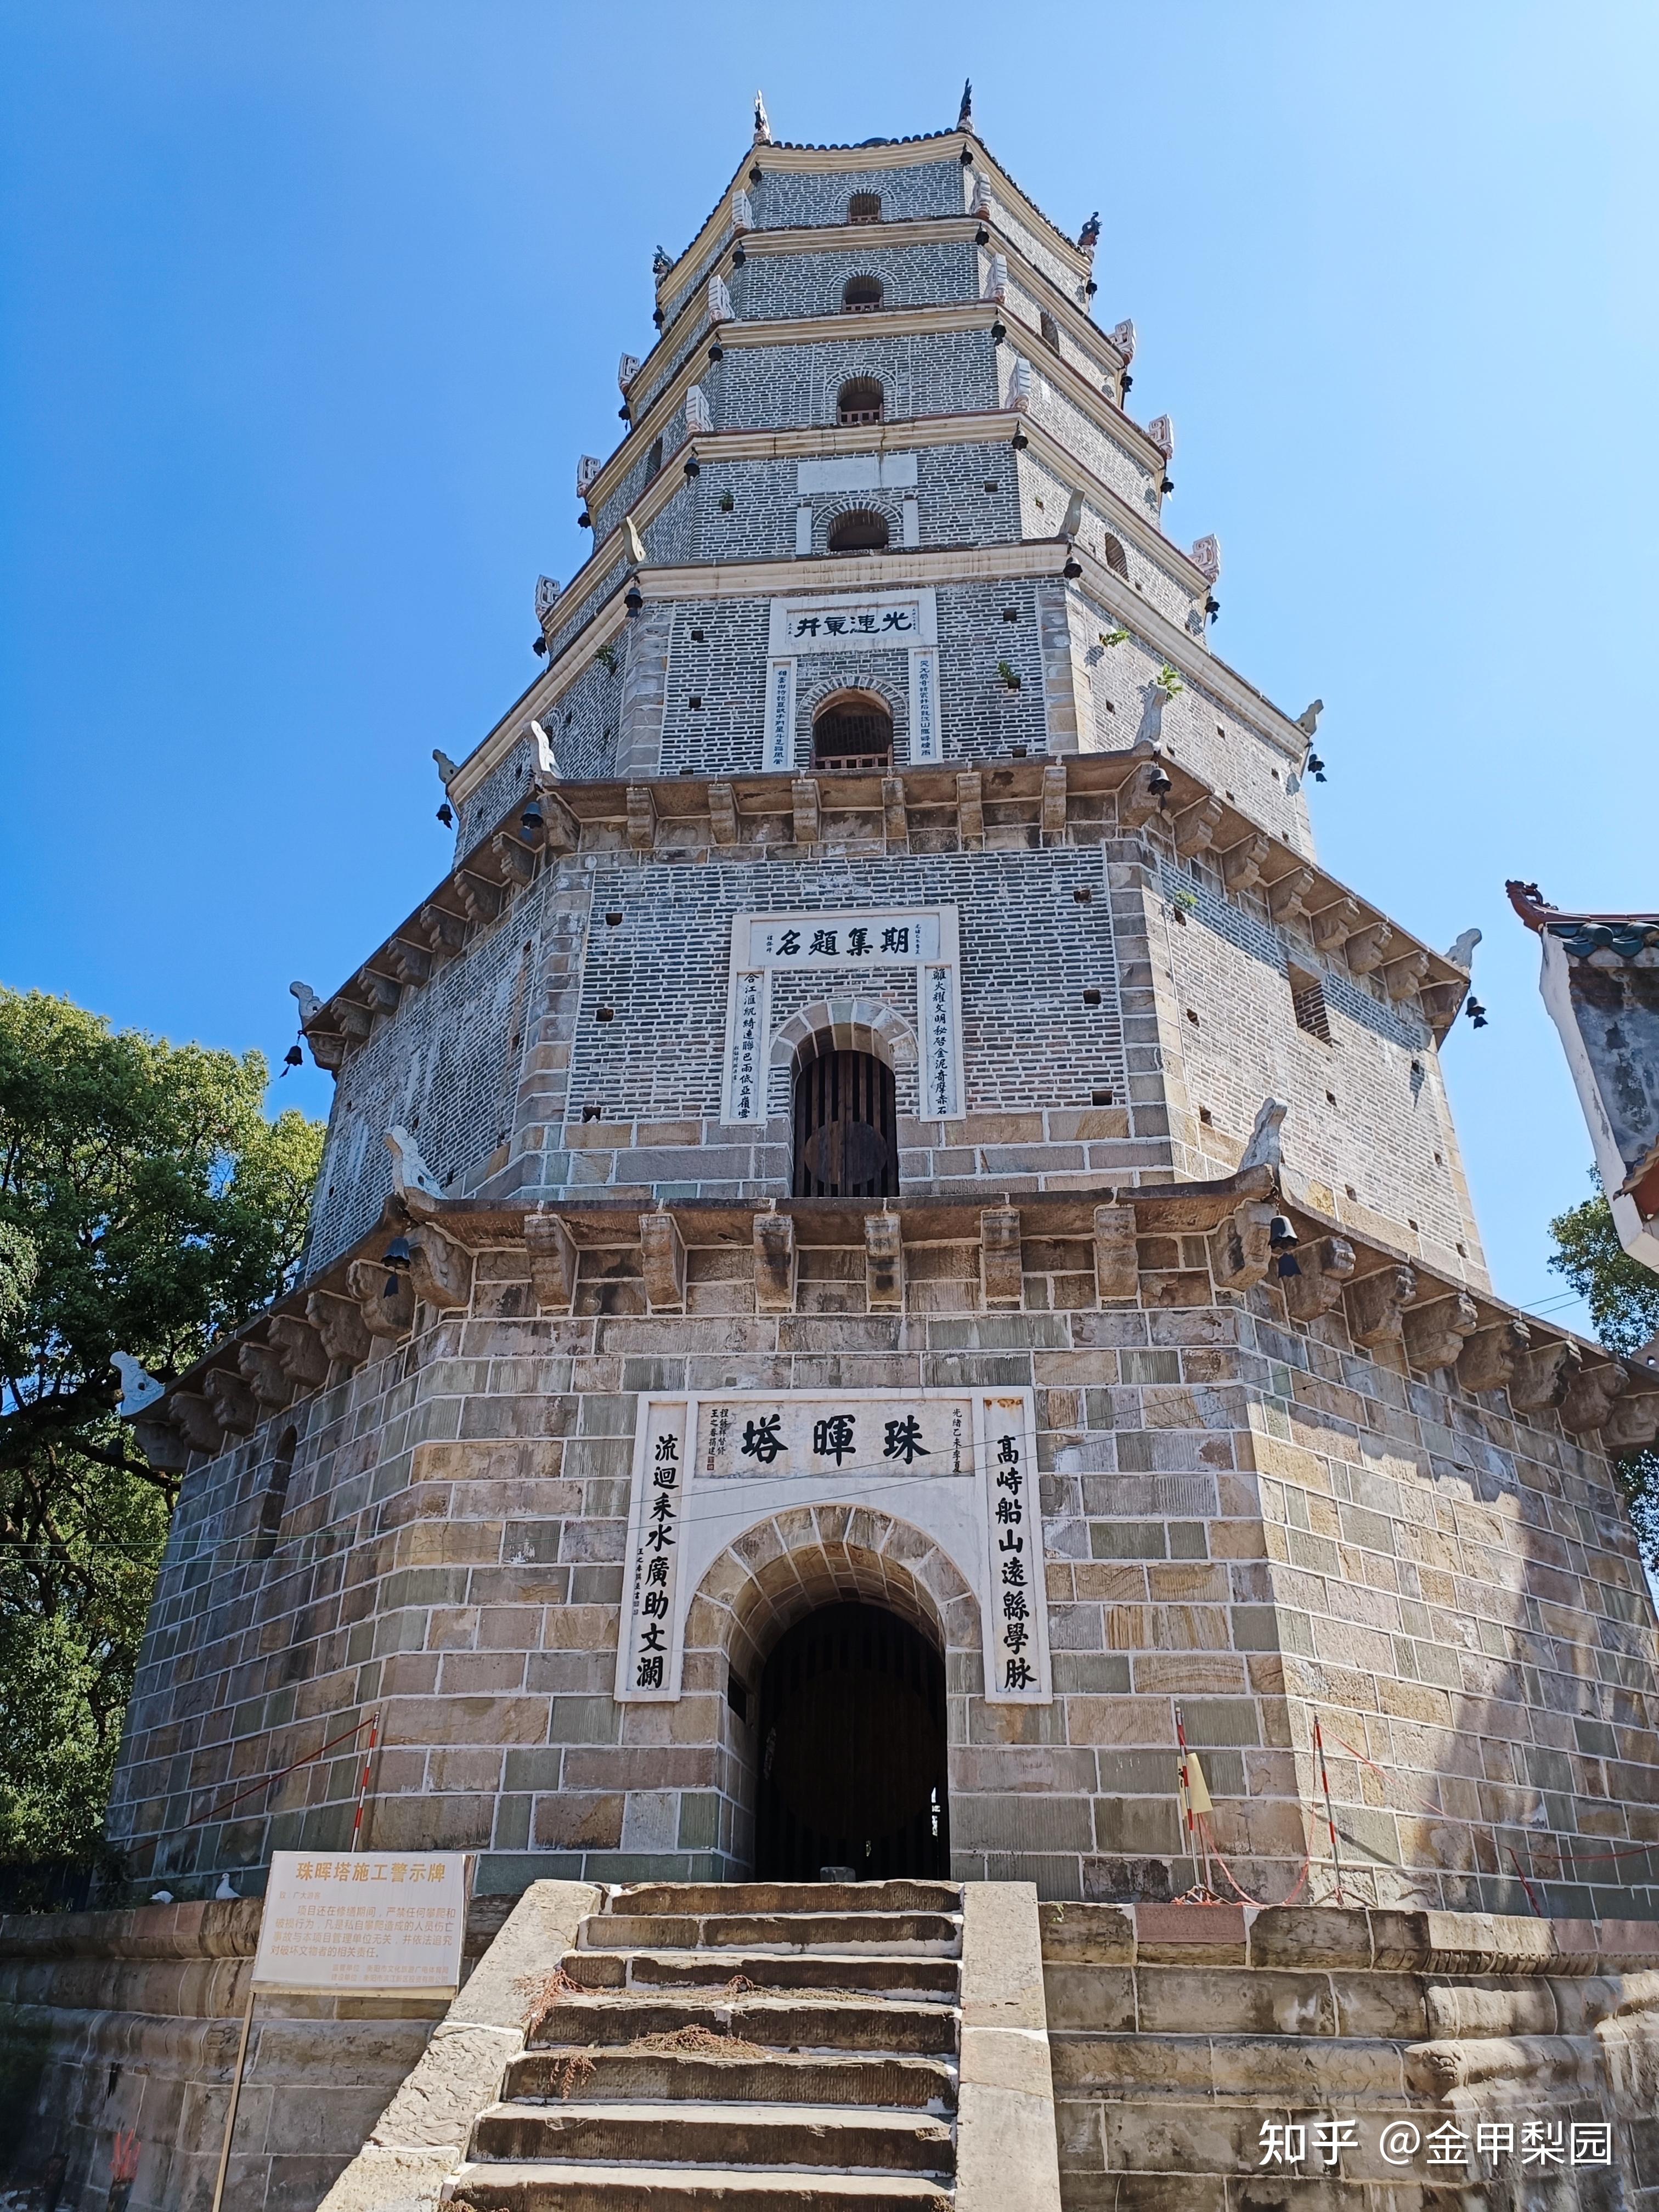 史载珠晖塔为清代安徽巡抚衡阳人王之春主持兴建,于光绪丁西(1897)年